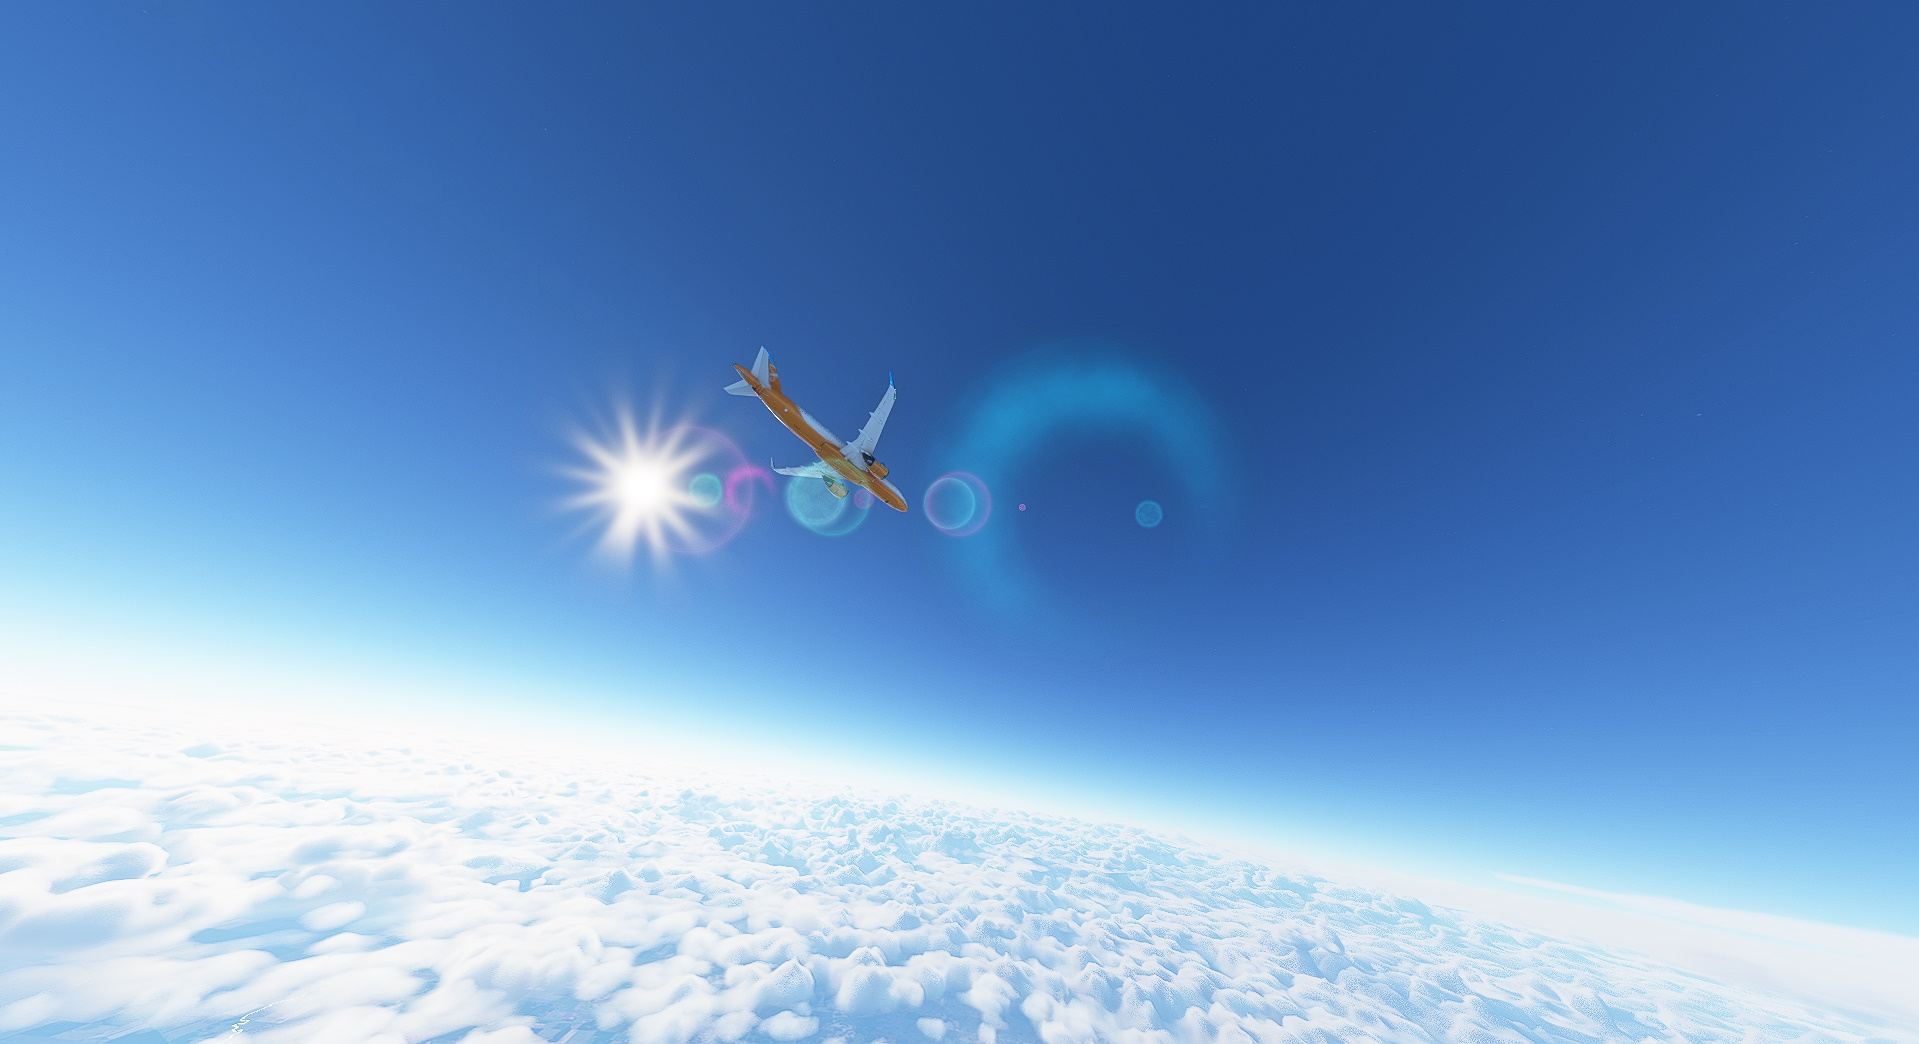 Microsoft Flight Simulator' will take to the skies via PC next